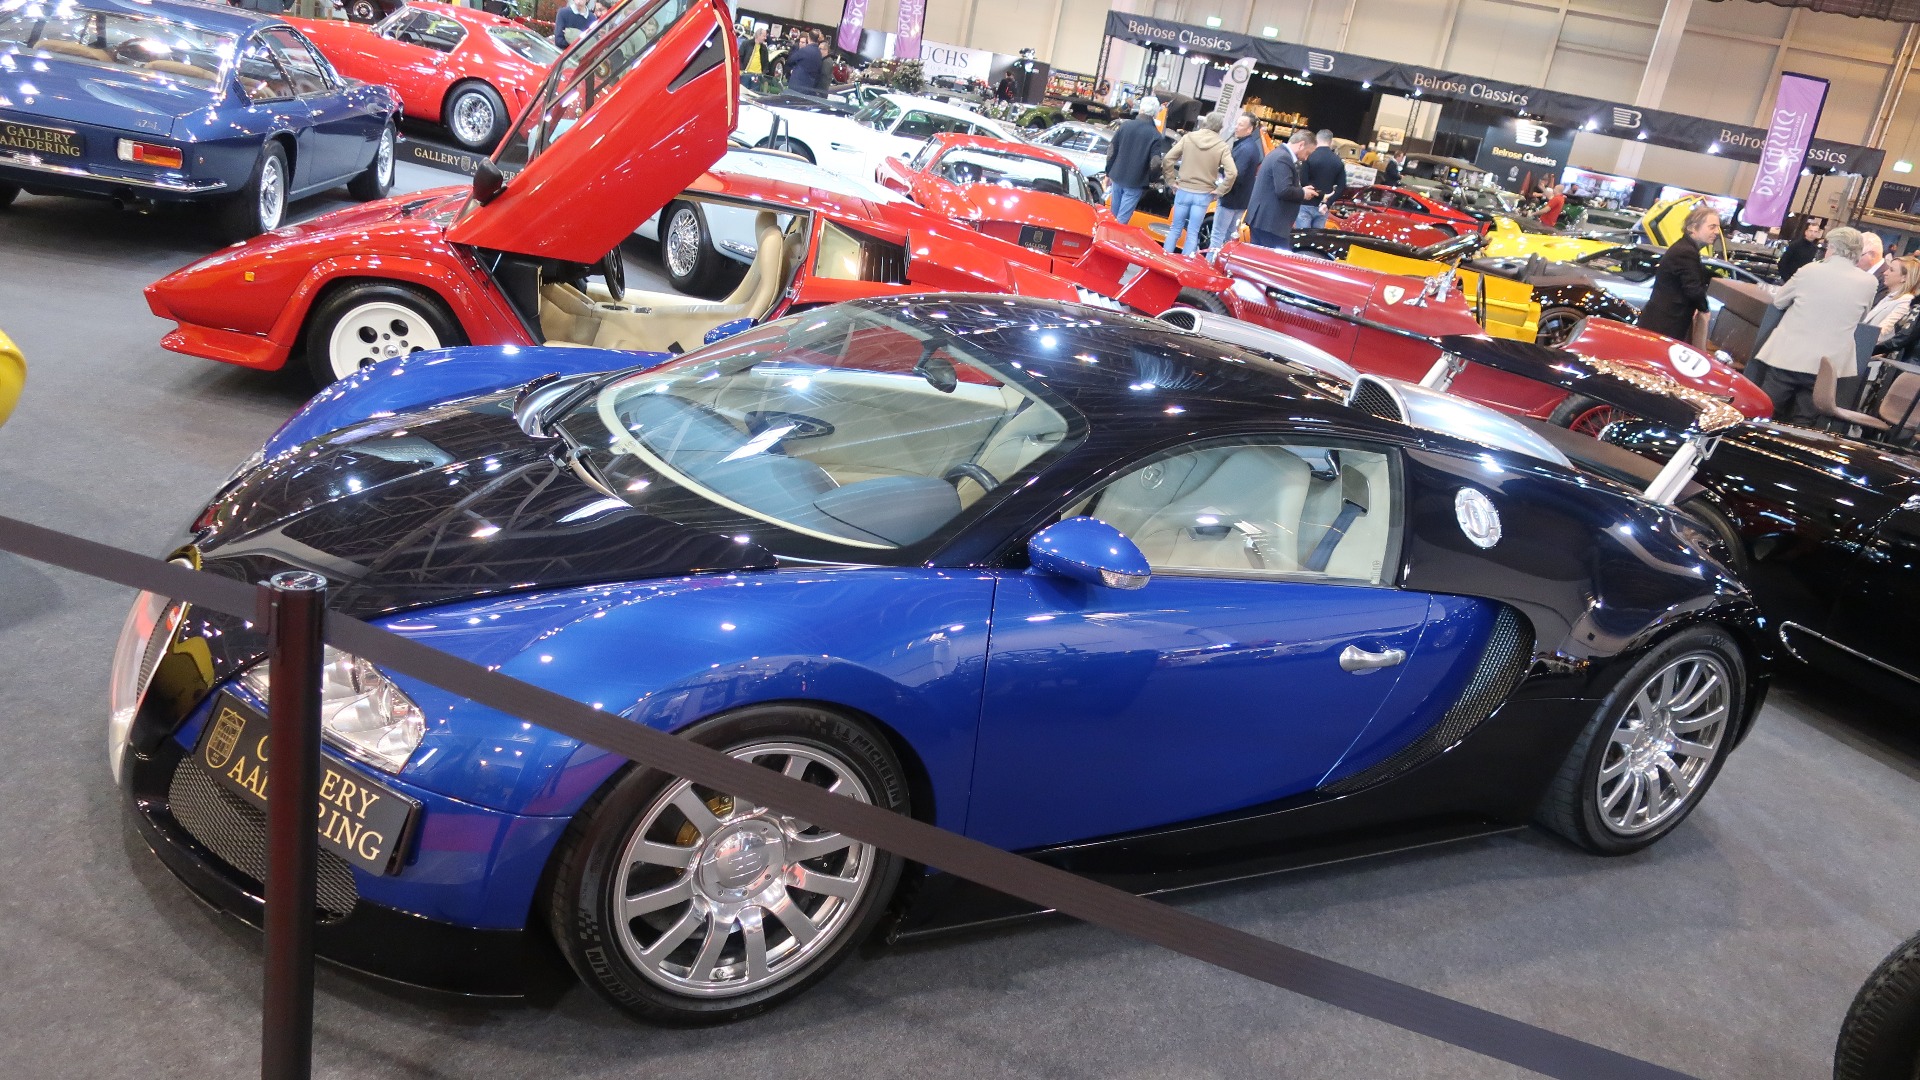 2007 Bugatti Veyron 16.4 til salgs for 1.625.000 Euro. Veyron har holdt seg godt i pris, som seg hør og bør.